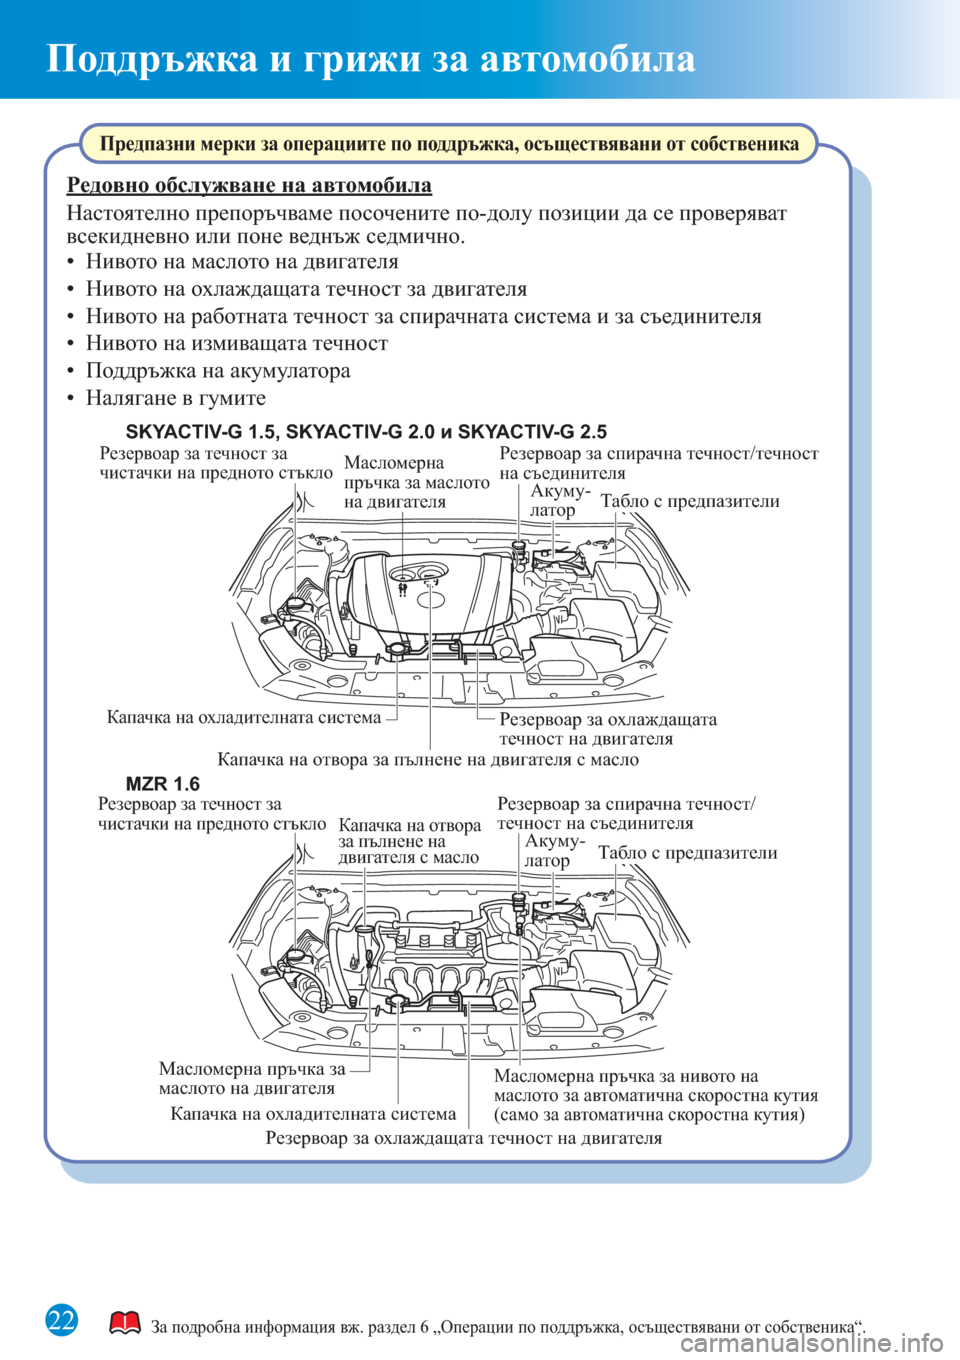 MAZDA MODEL 3 HATCHBACK 2015  Бързо ръководство (in Bulgarian) 22
Поддръжка и грижи за автомобила
Резервоар за течност за 
чистачки на предното стъклоРезервоар за спирачна �